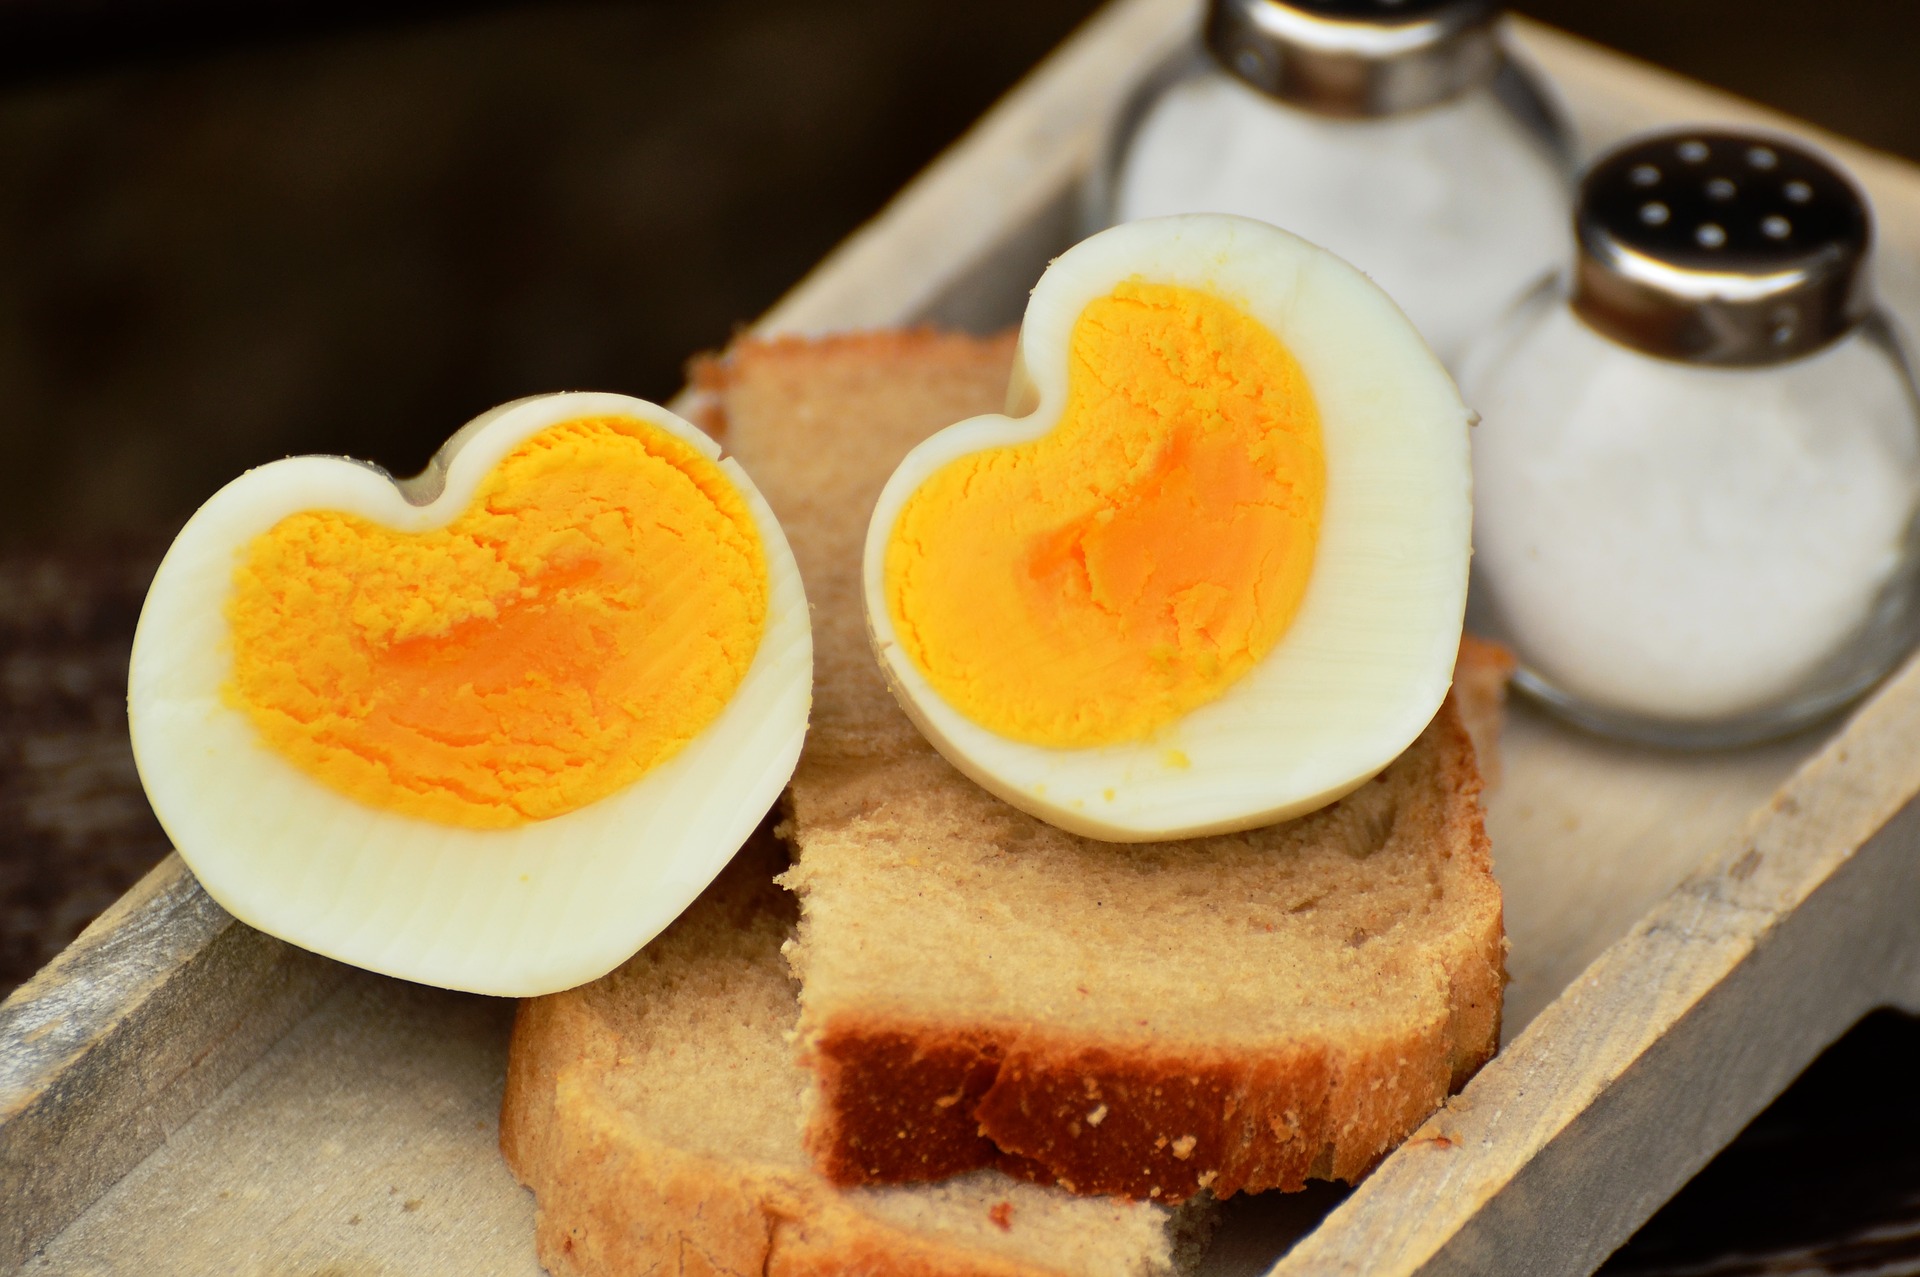 Sử dụng trứng sai cách có thể dẫn đến vấn đề về đường tiêu hóa 